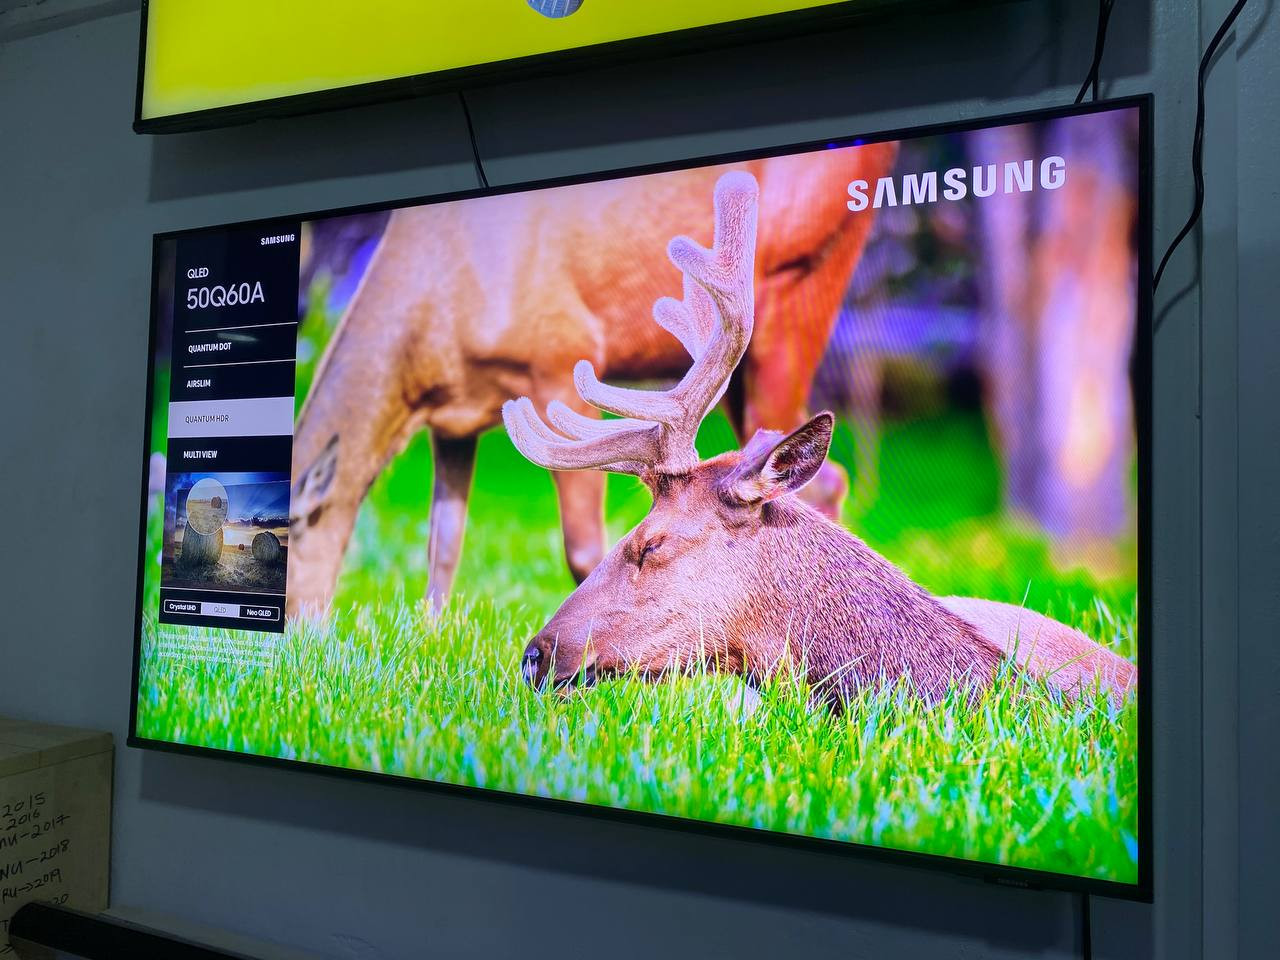 Samsung Smart Hub 50" QLED 4K HDR TV (2021]